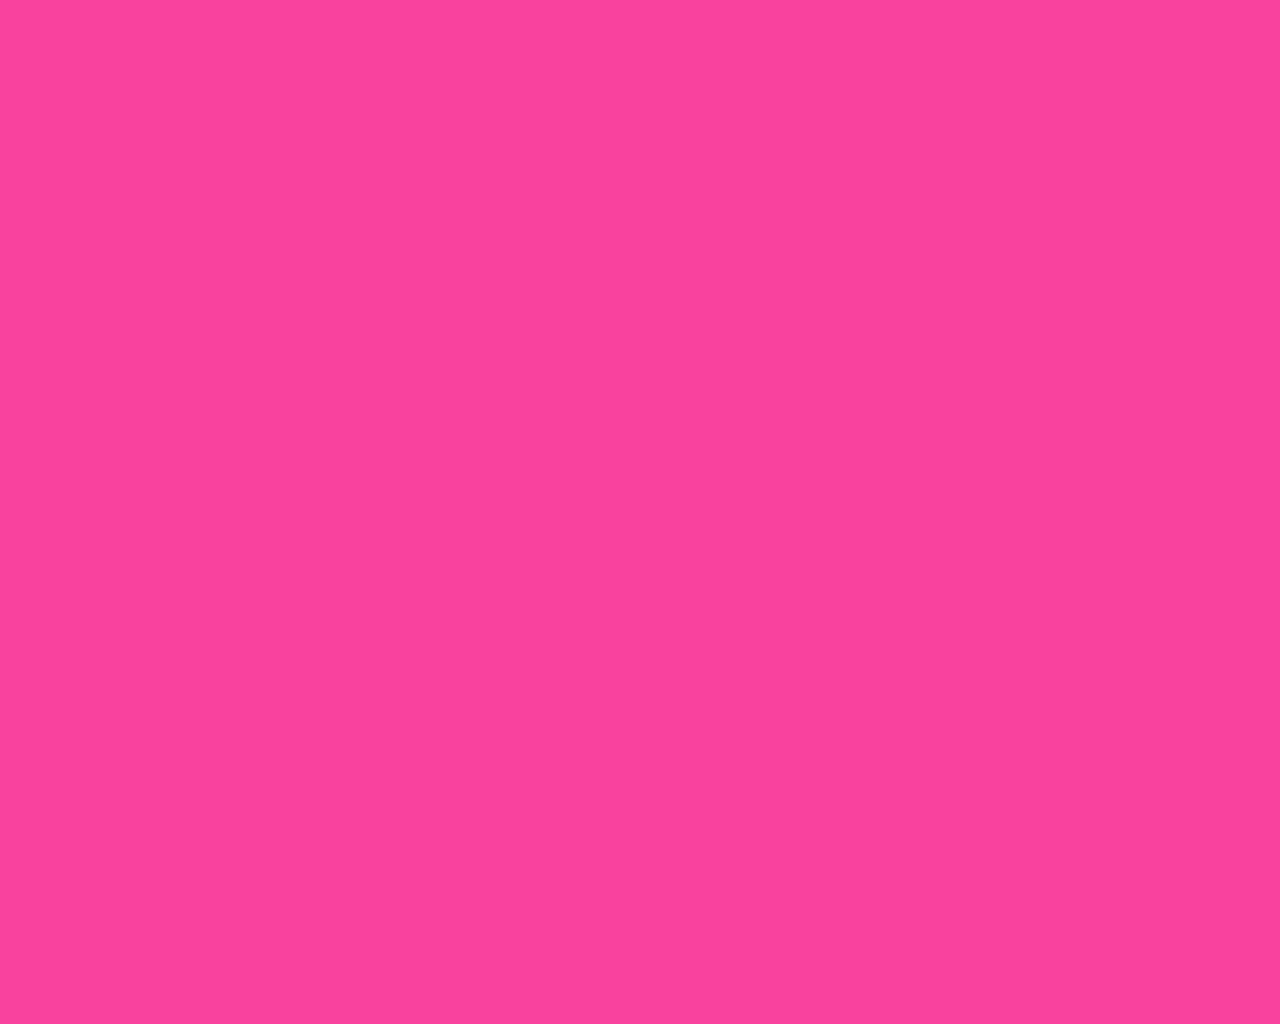 1280x1024 Rose Bonbon Solid Color Background